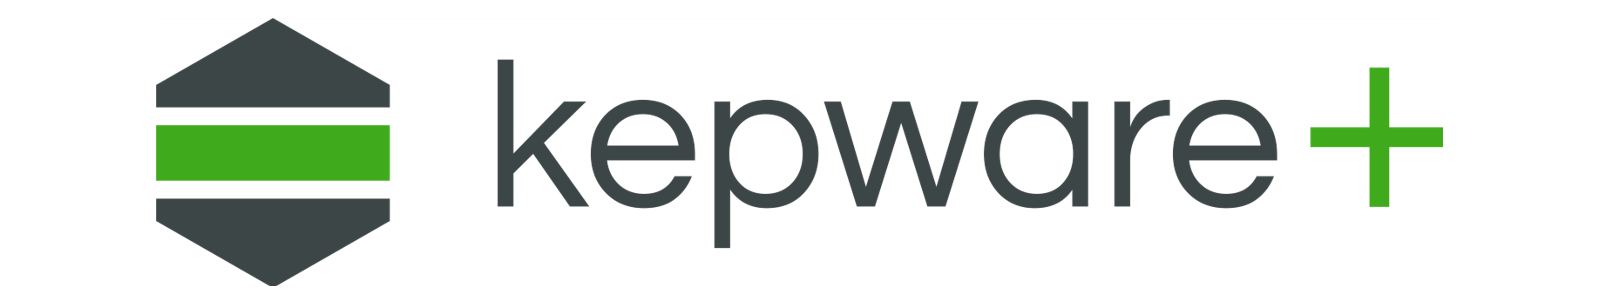 Kepware+ Logo